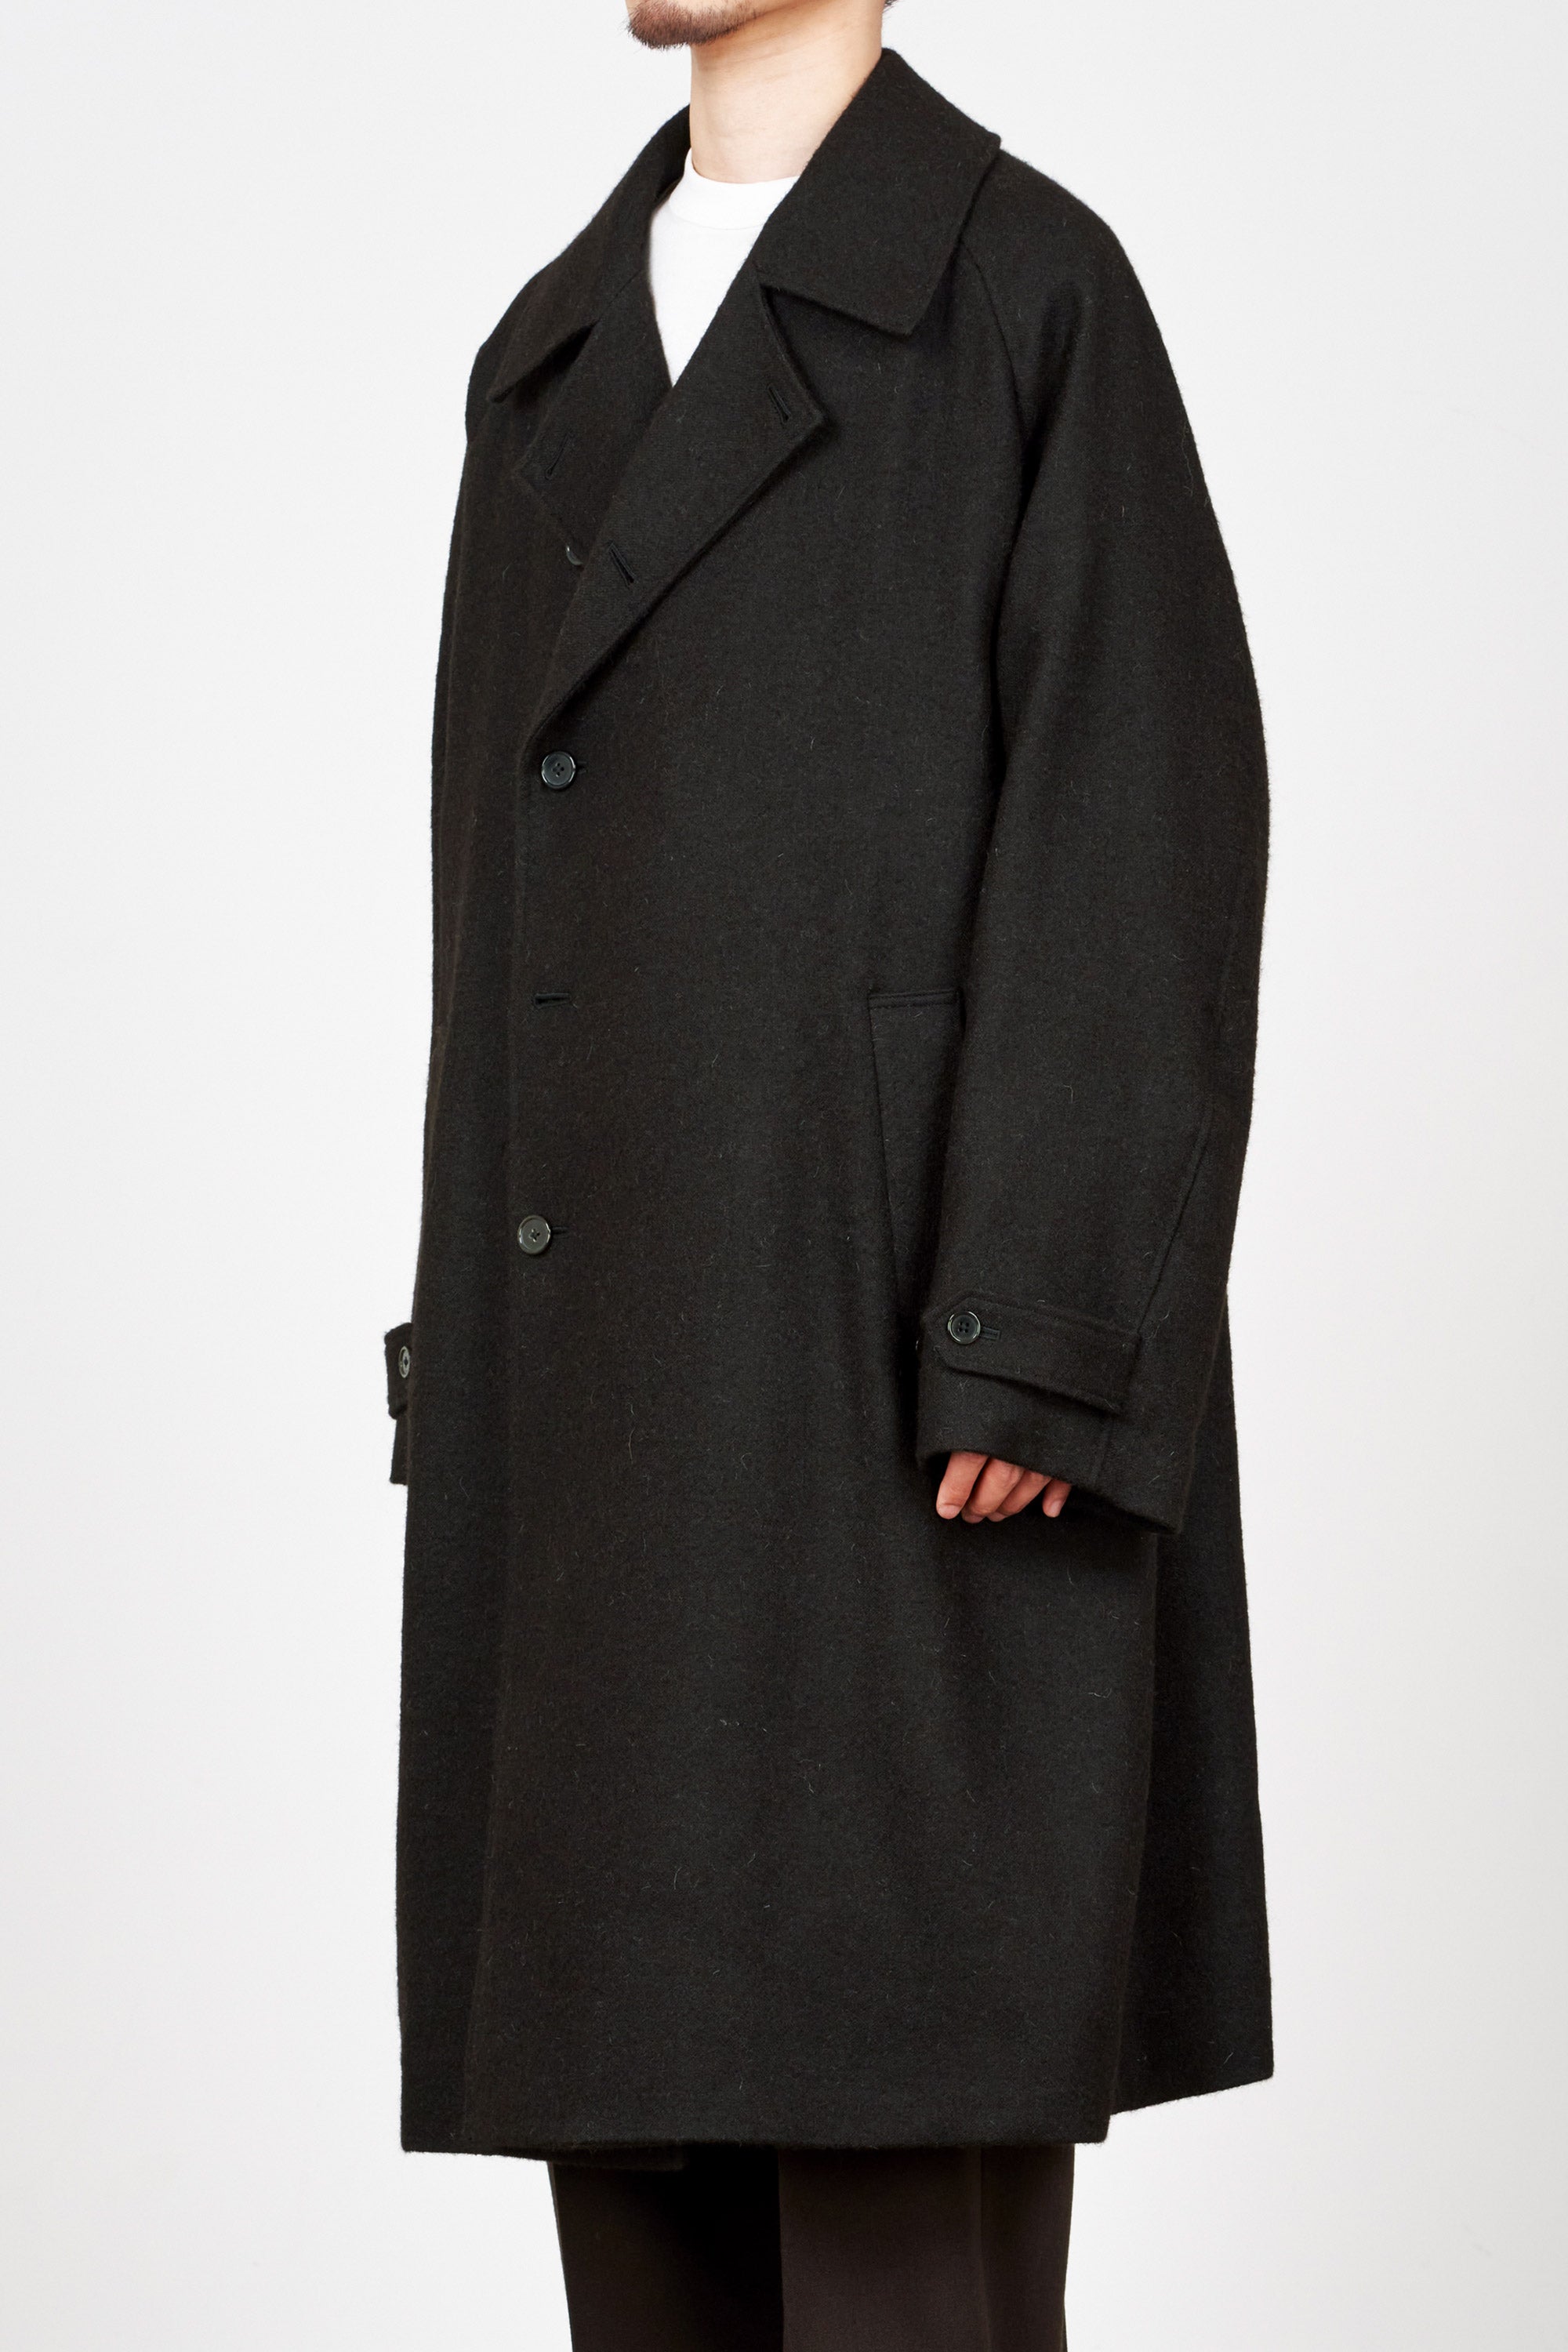 NATURAL COLOR ALPACA DOUBLE-CLOTH BEAVER ALPACA TRENCH COAT, Black